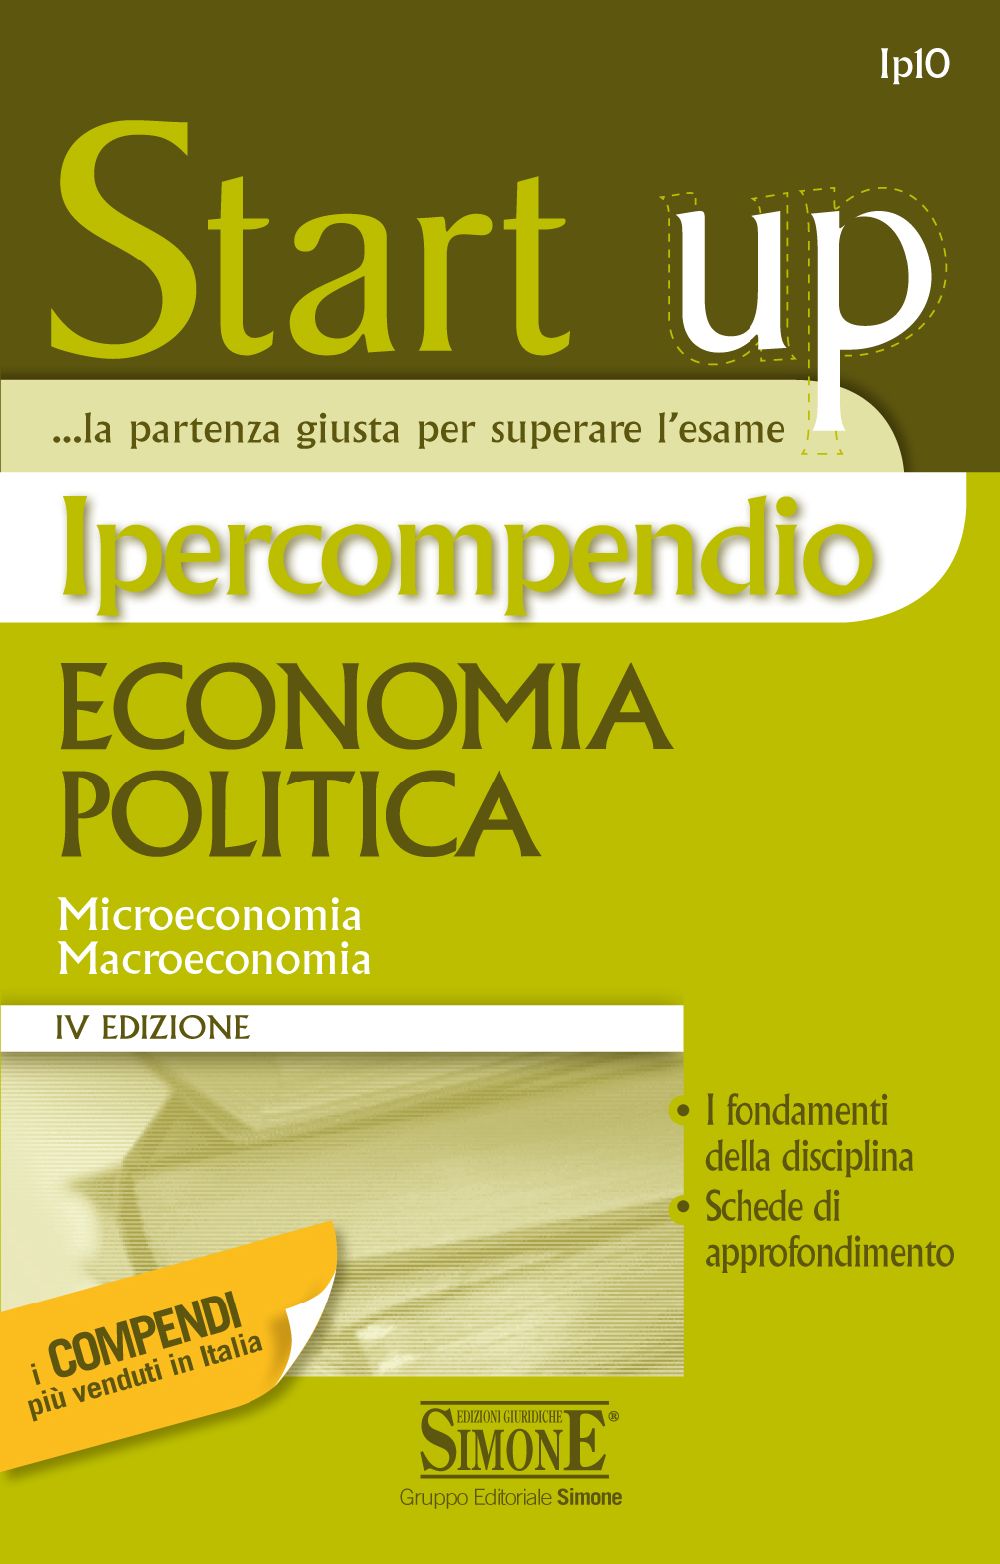 [Ebook] Ipercompendio Economia politica